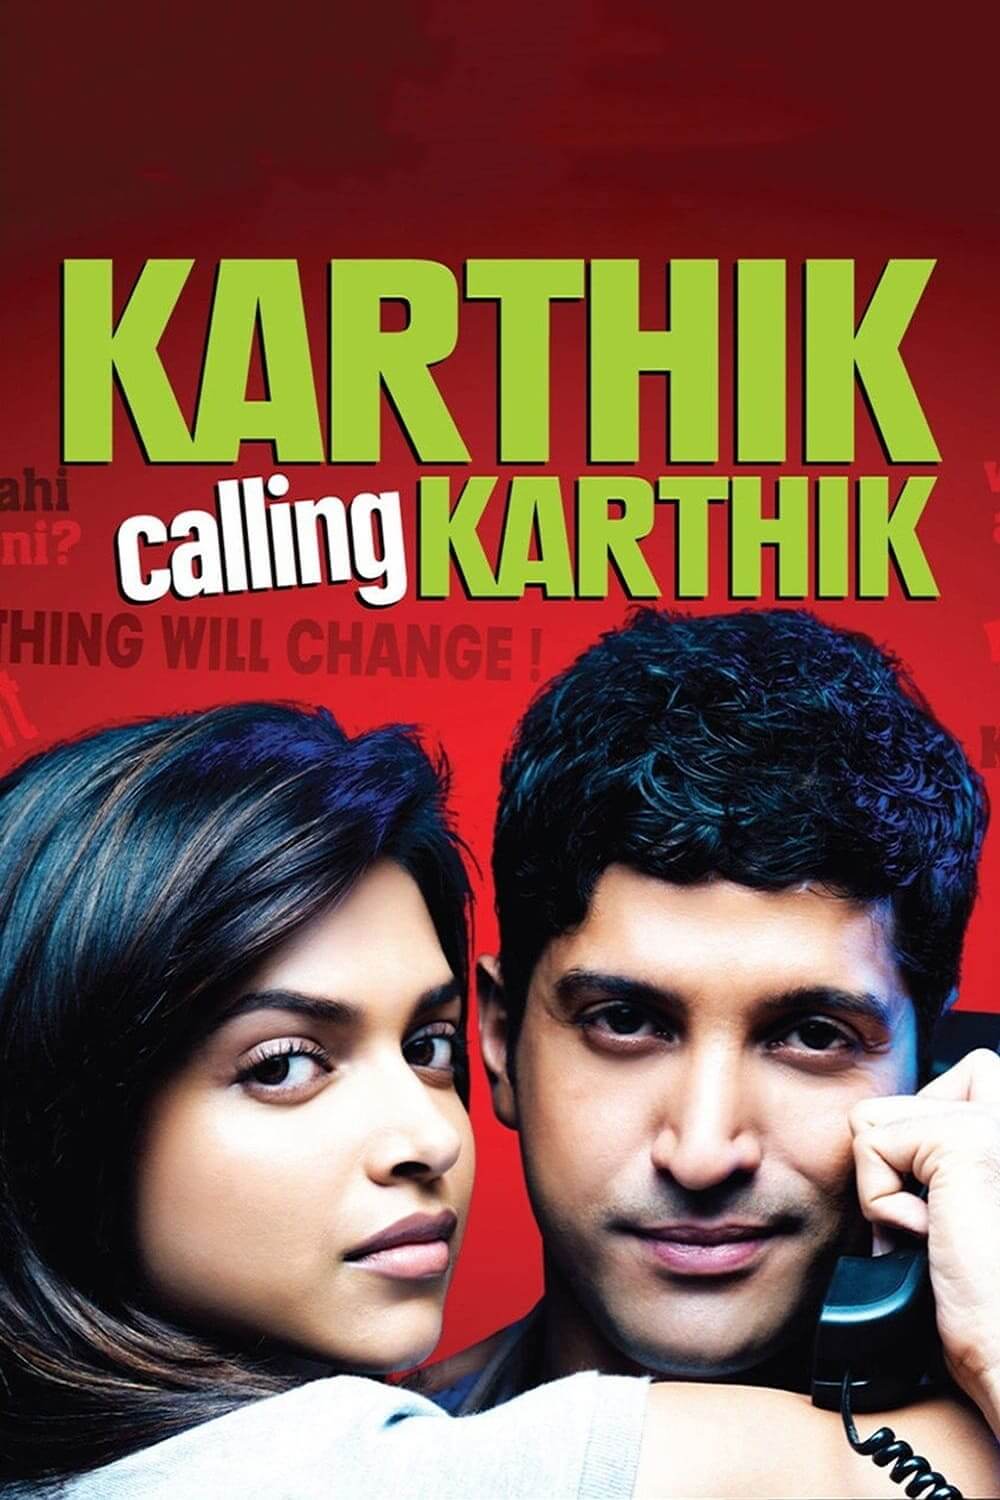 تماس کارتیک به کارتیک (Karthik Calling Karthik)